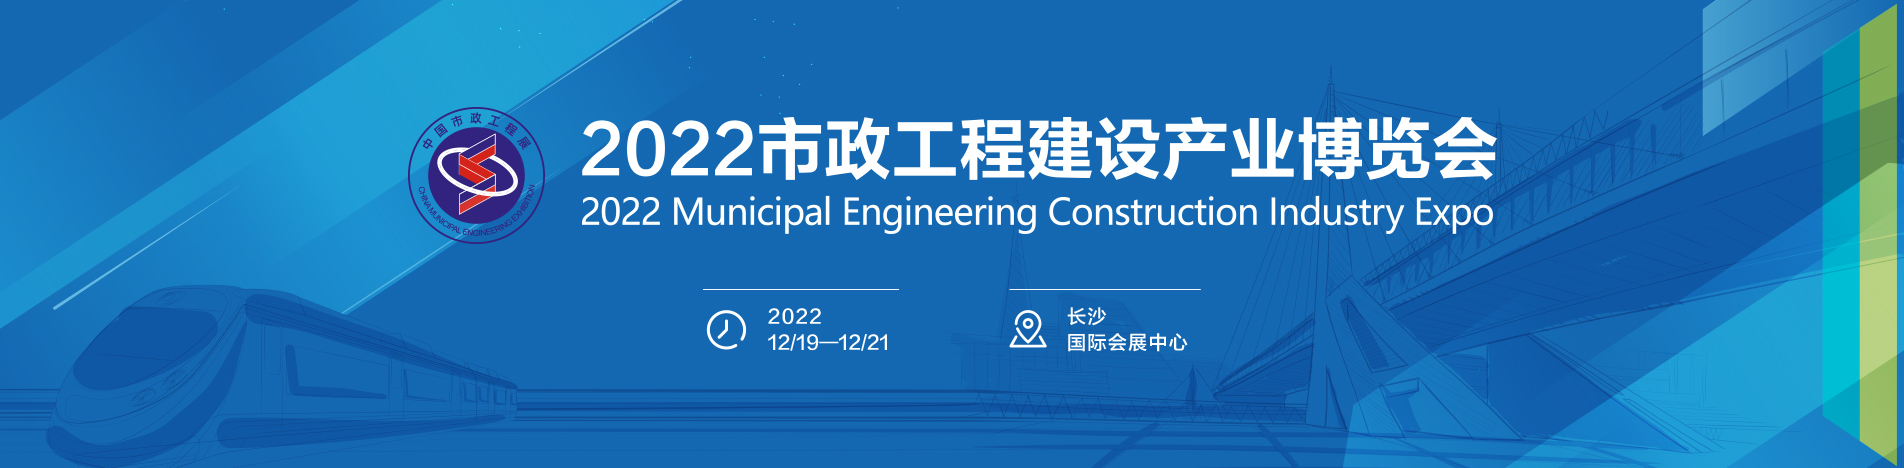 2023中国市政工程与环卫装备博览会-推动市政创新研发 激发企业创新力量